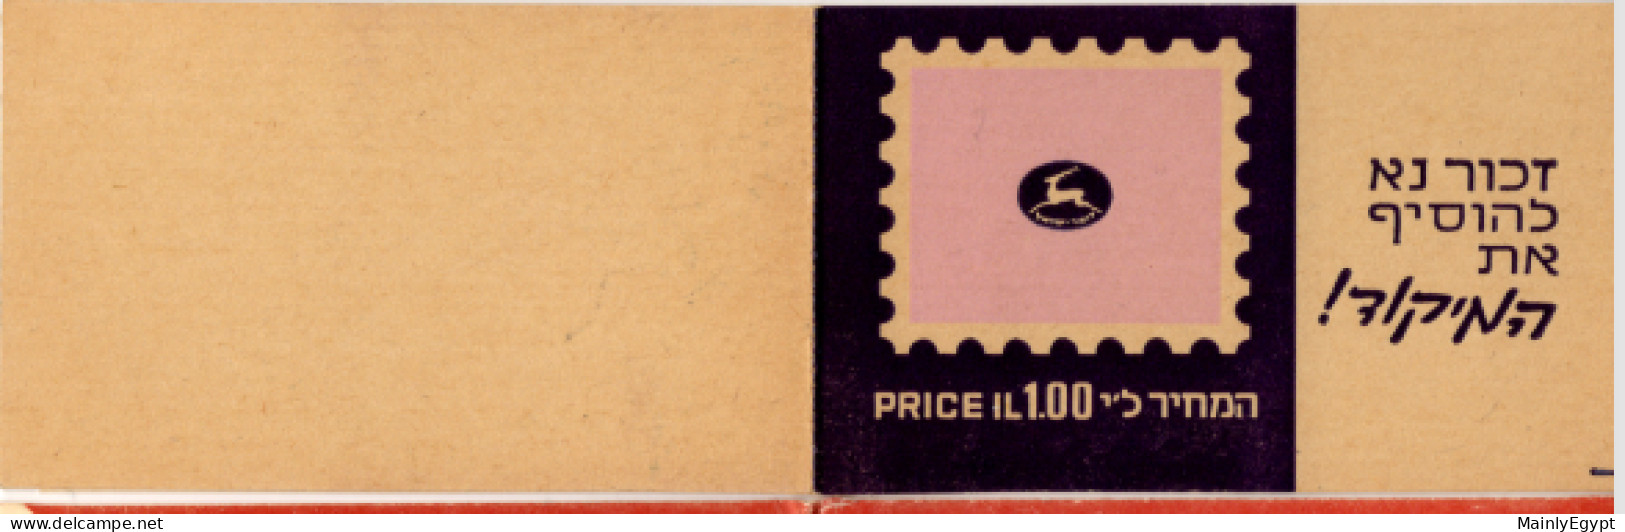 ISRAEL: Stamp Booklet 1970 MNH #F020 - Booklets